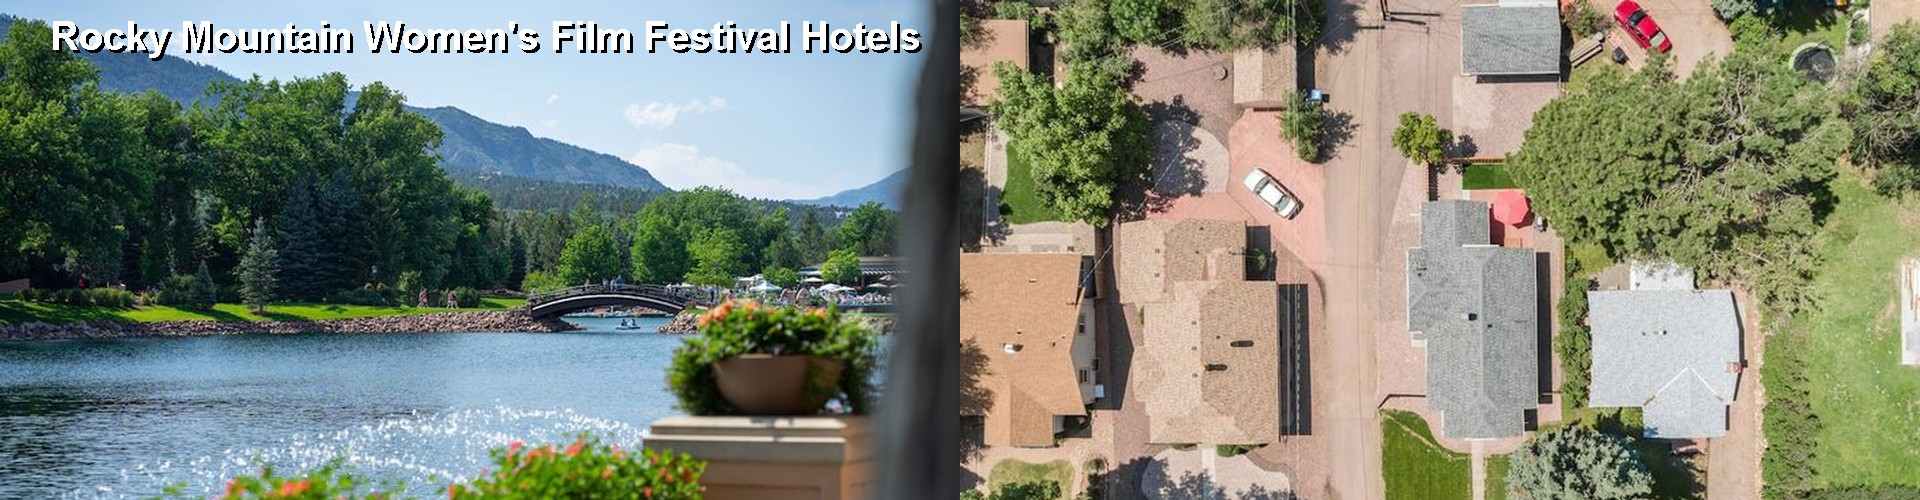 5 Best Hotels near Rocky Mountain Women's Film Festival